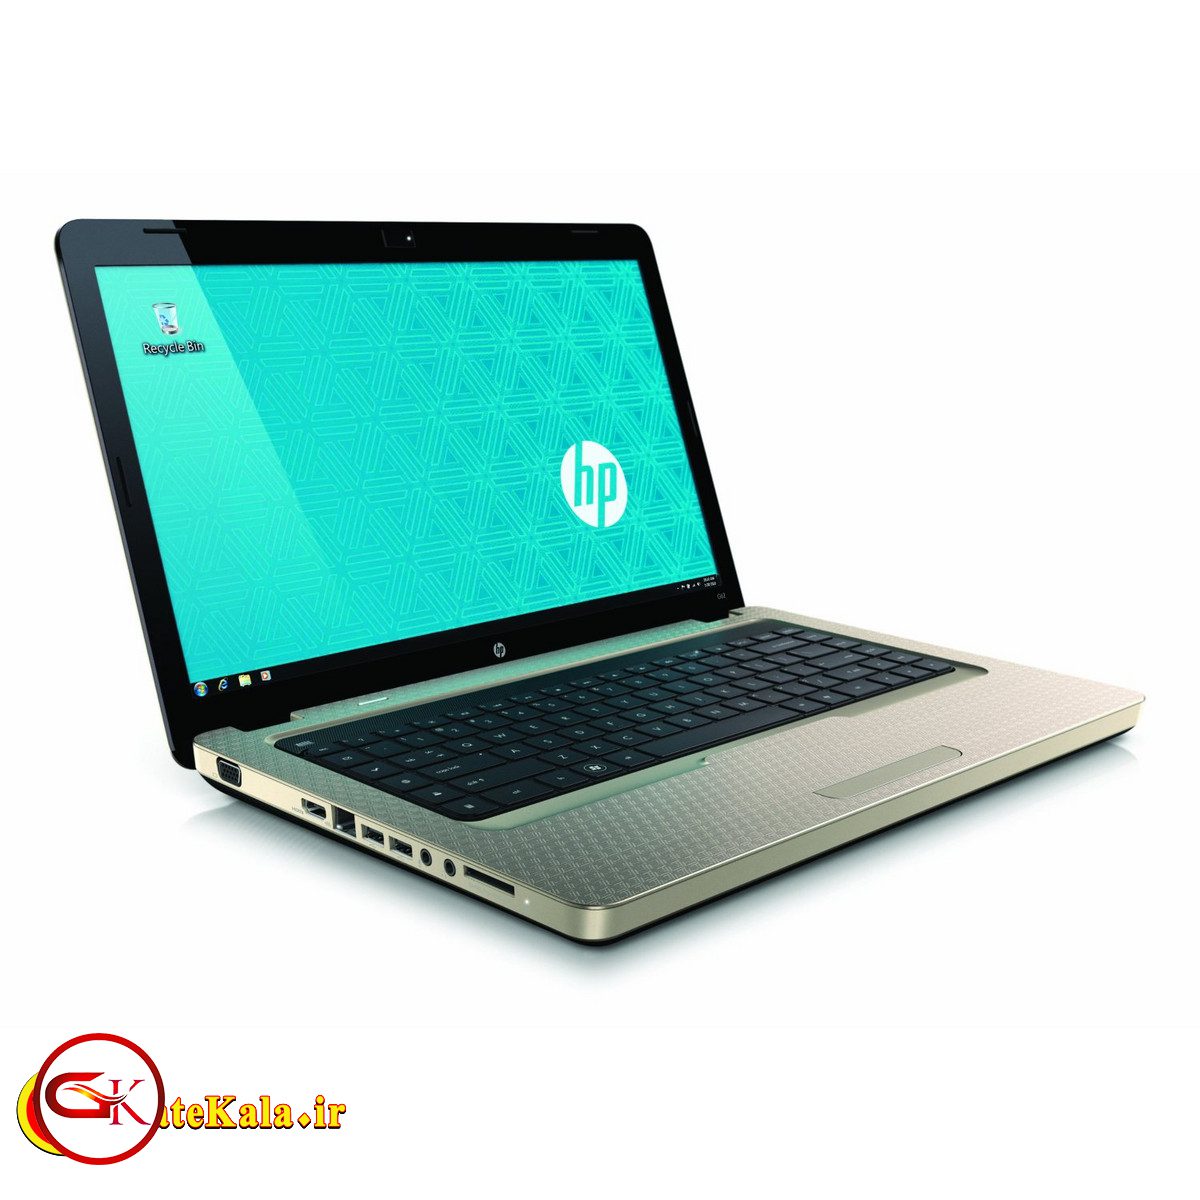 بررسی لپ تاپ HP G62